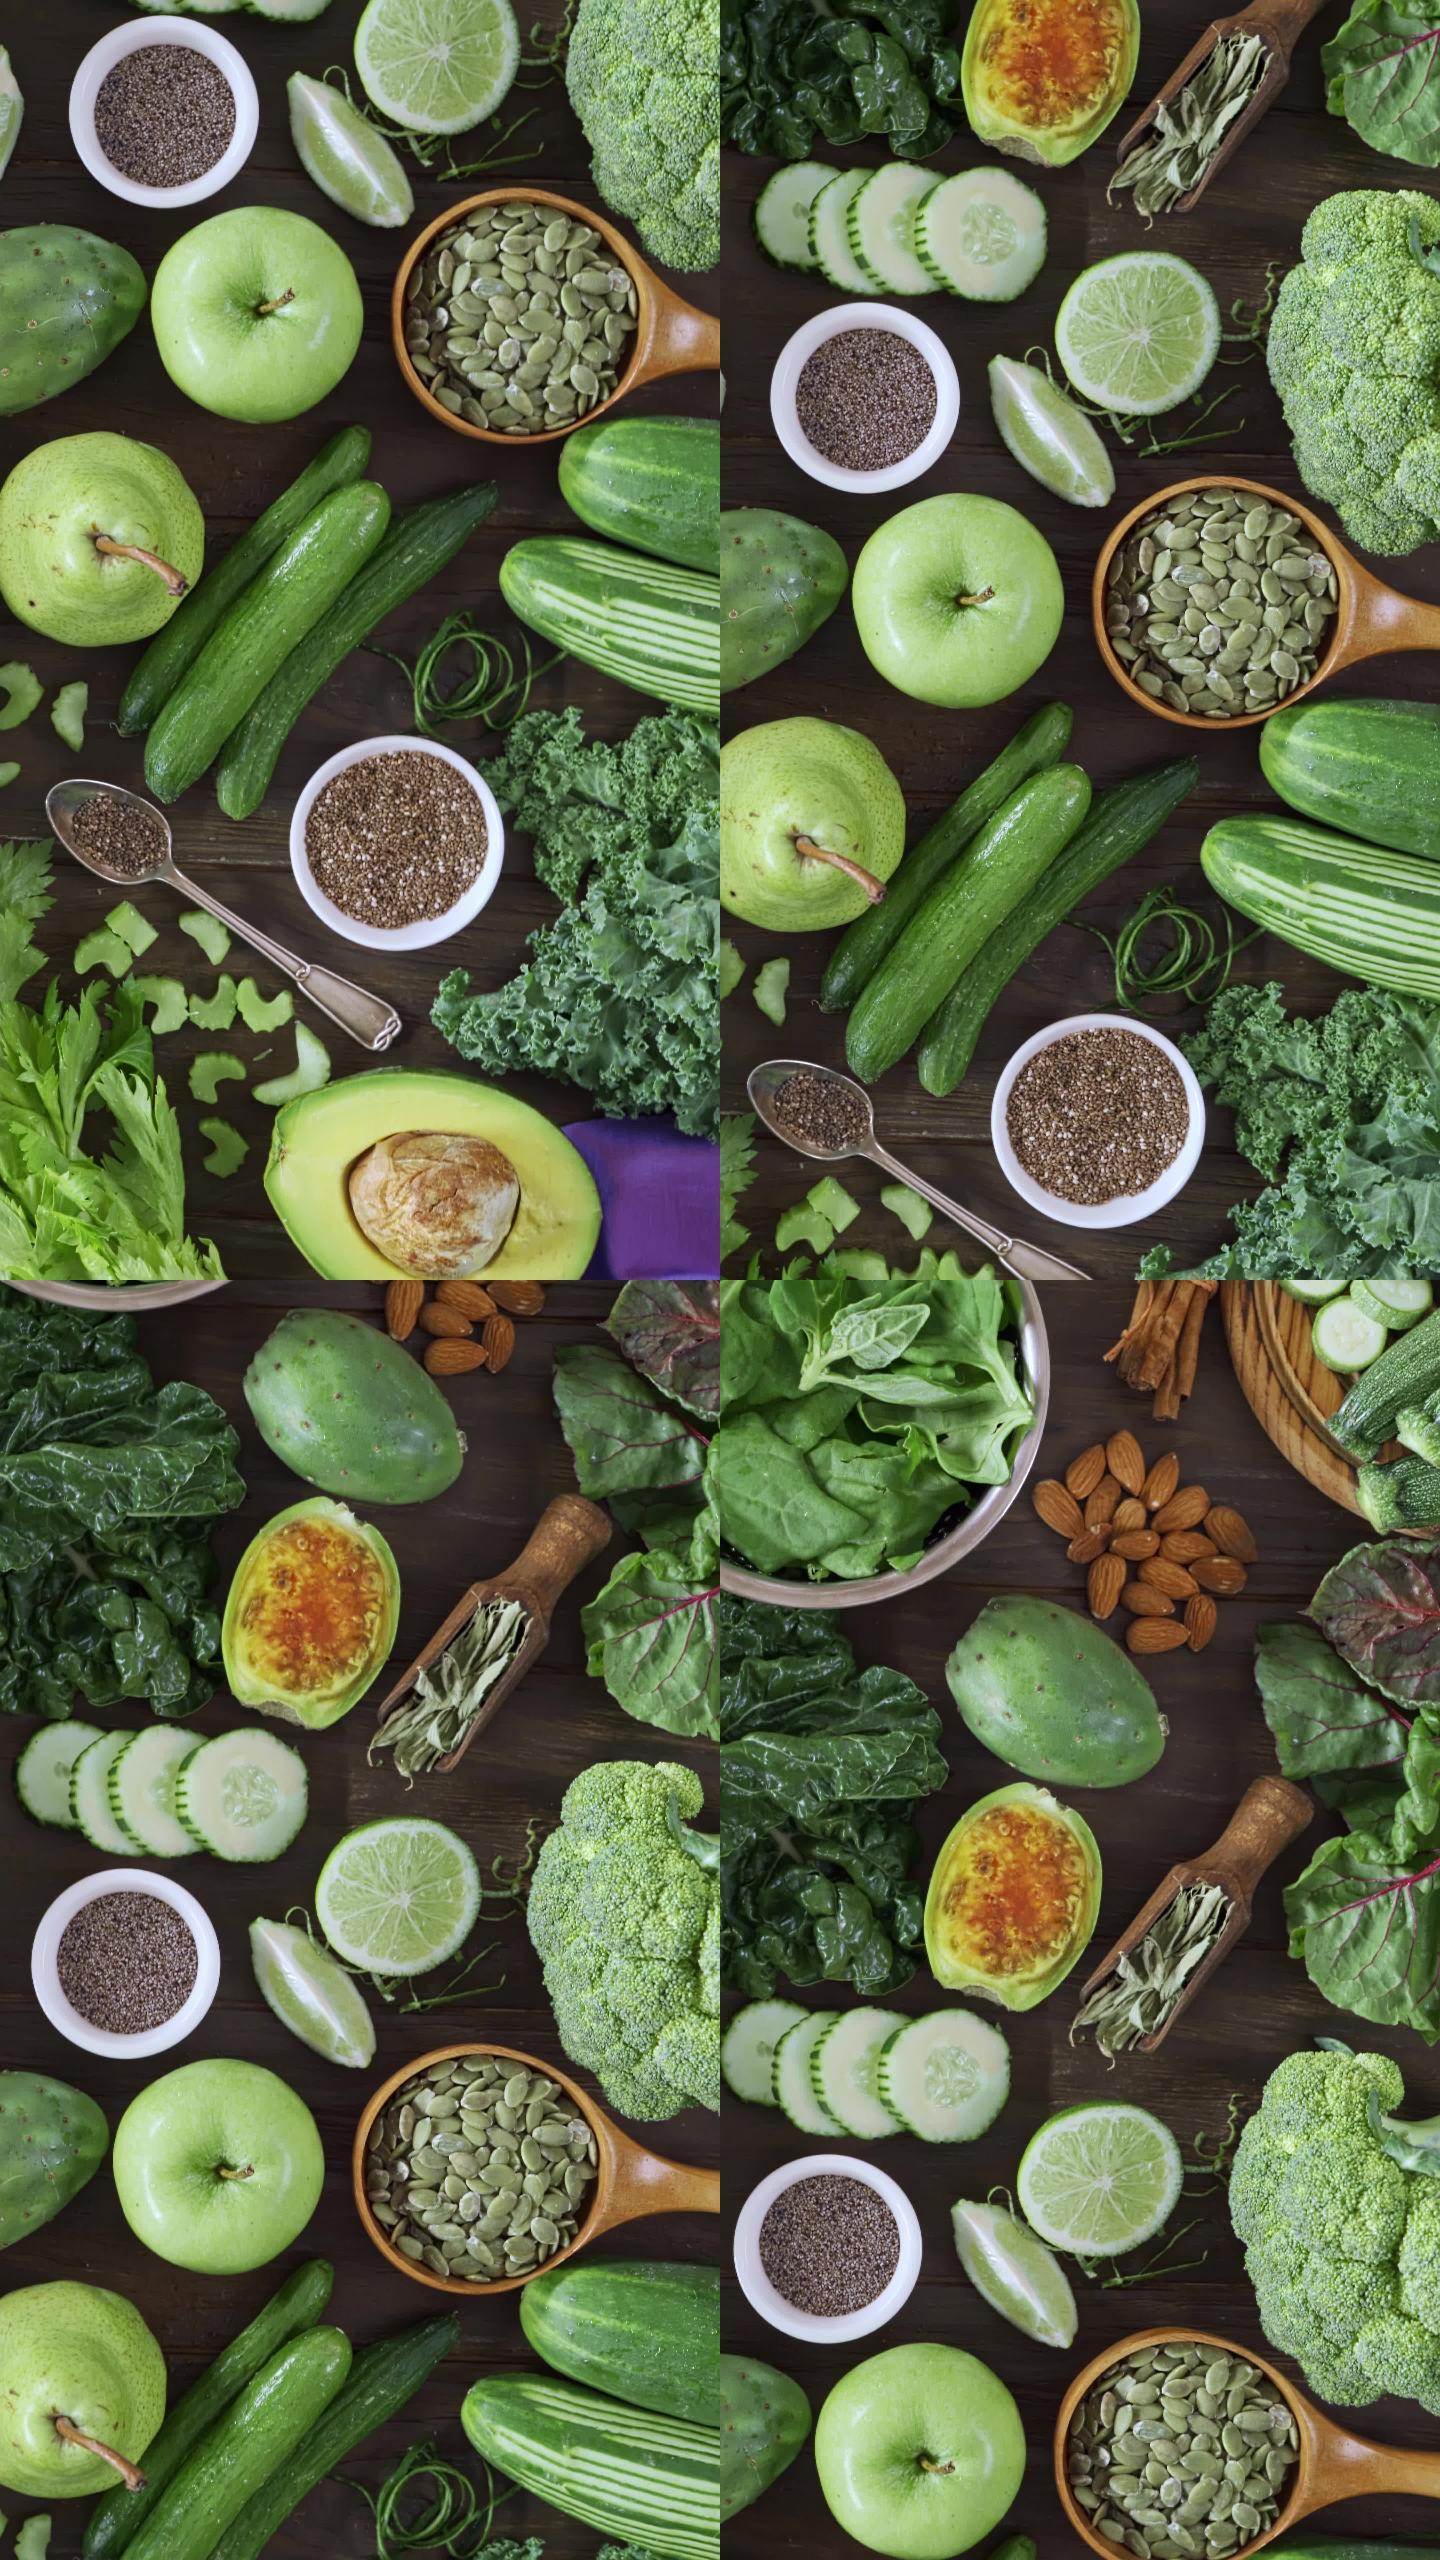 桌上摆满了绿色水果和蔬菜